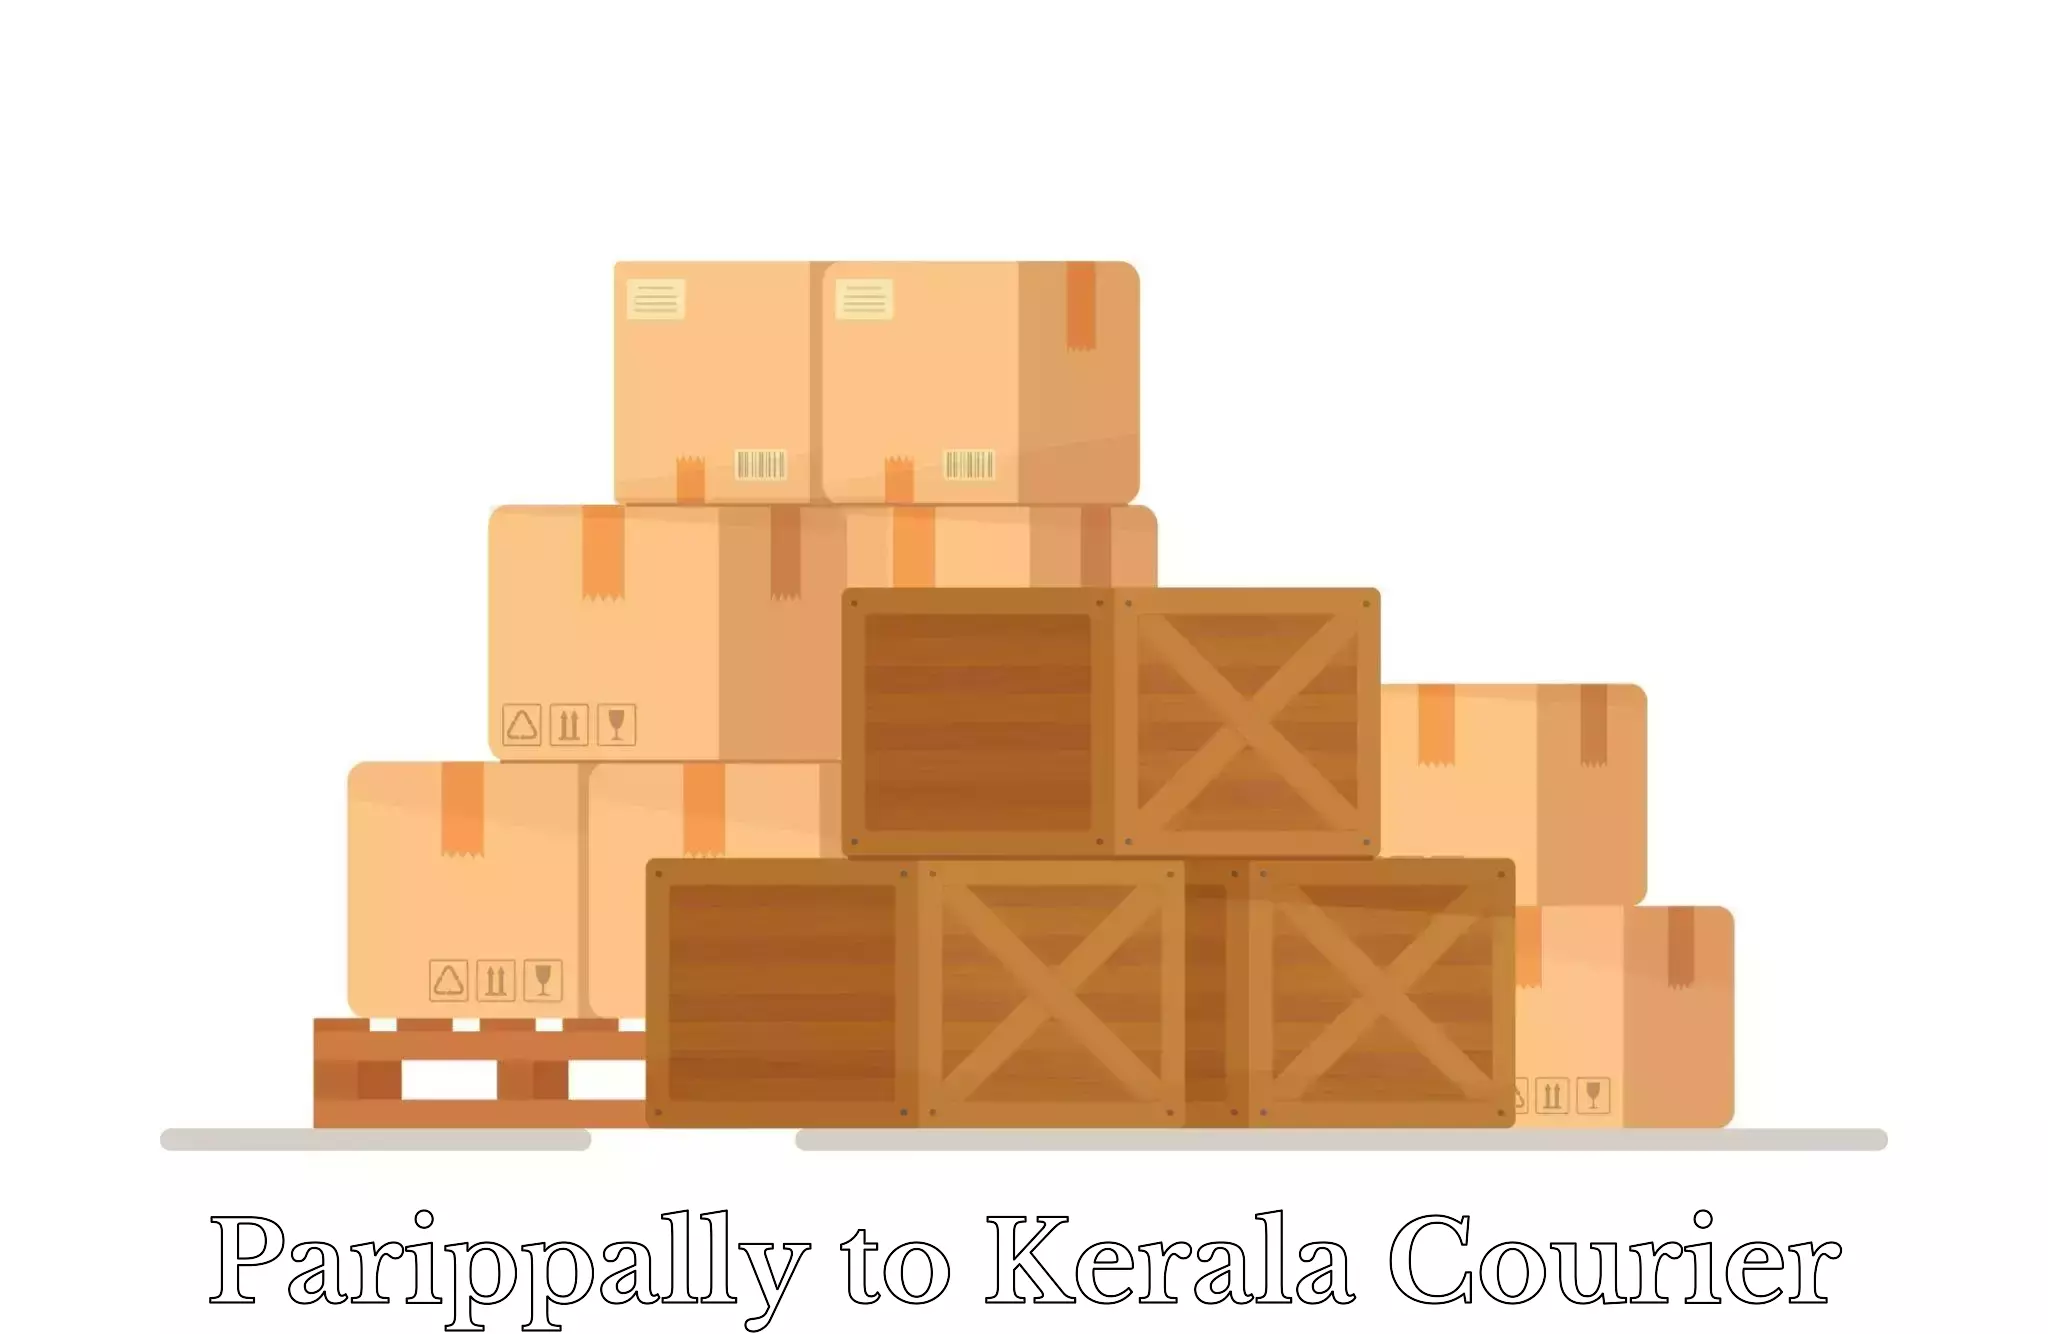 Luggage shipping estimate Parippally to Kozhencherry